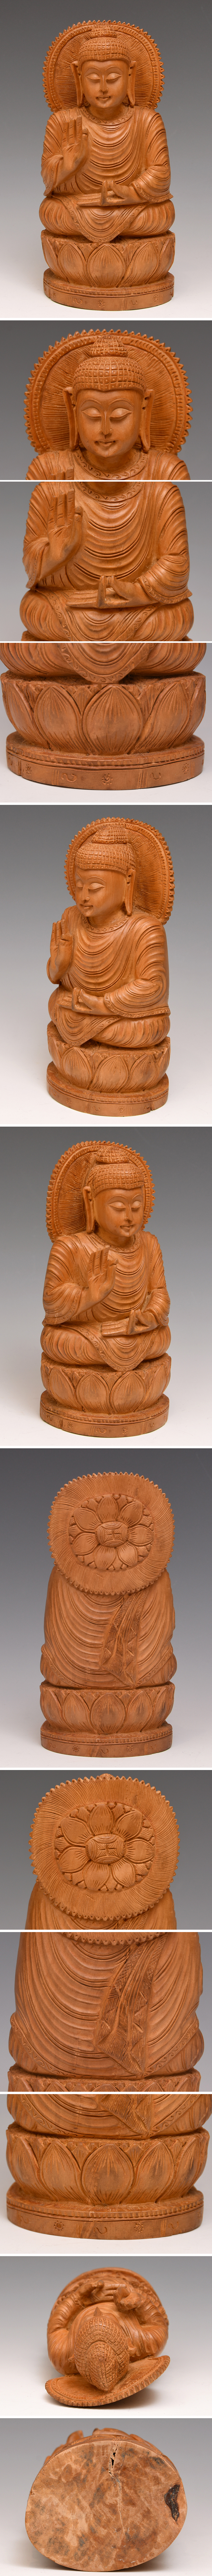 仏教美術 東南アジア 木彫 仏像 如来 坐像 高:20㎝ 細密彫刻 木工芸